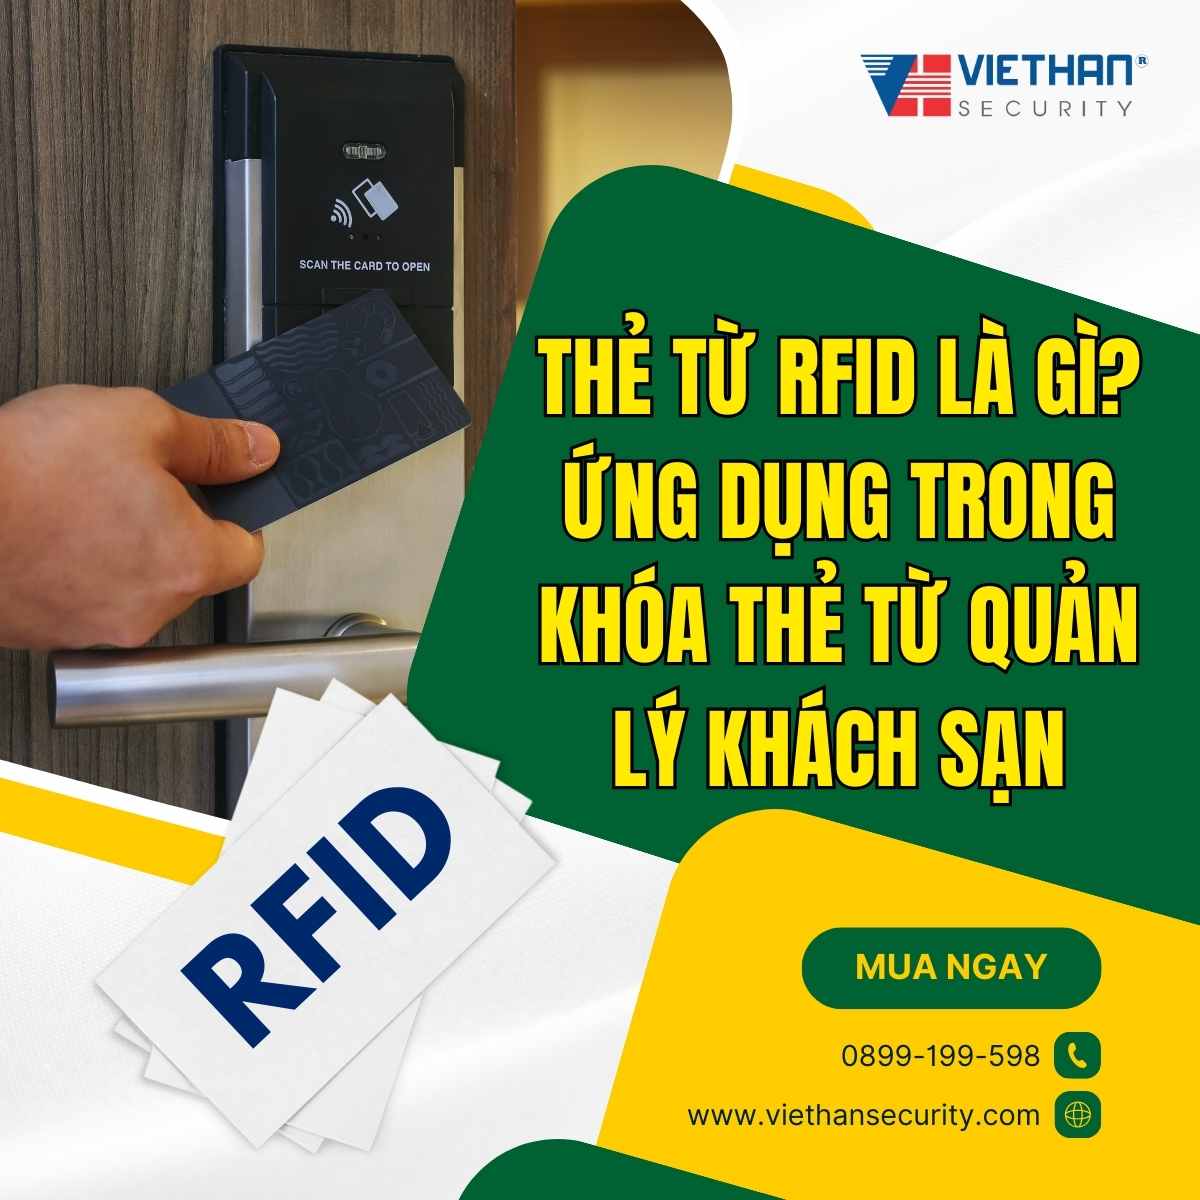 Thẻ từ RFID là gì? Ứng dụng trong Khóa thẻ từ quản lý Khách sạn